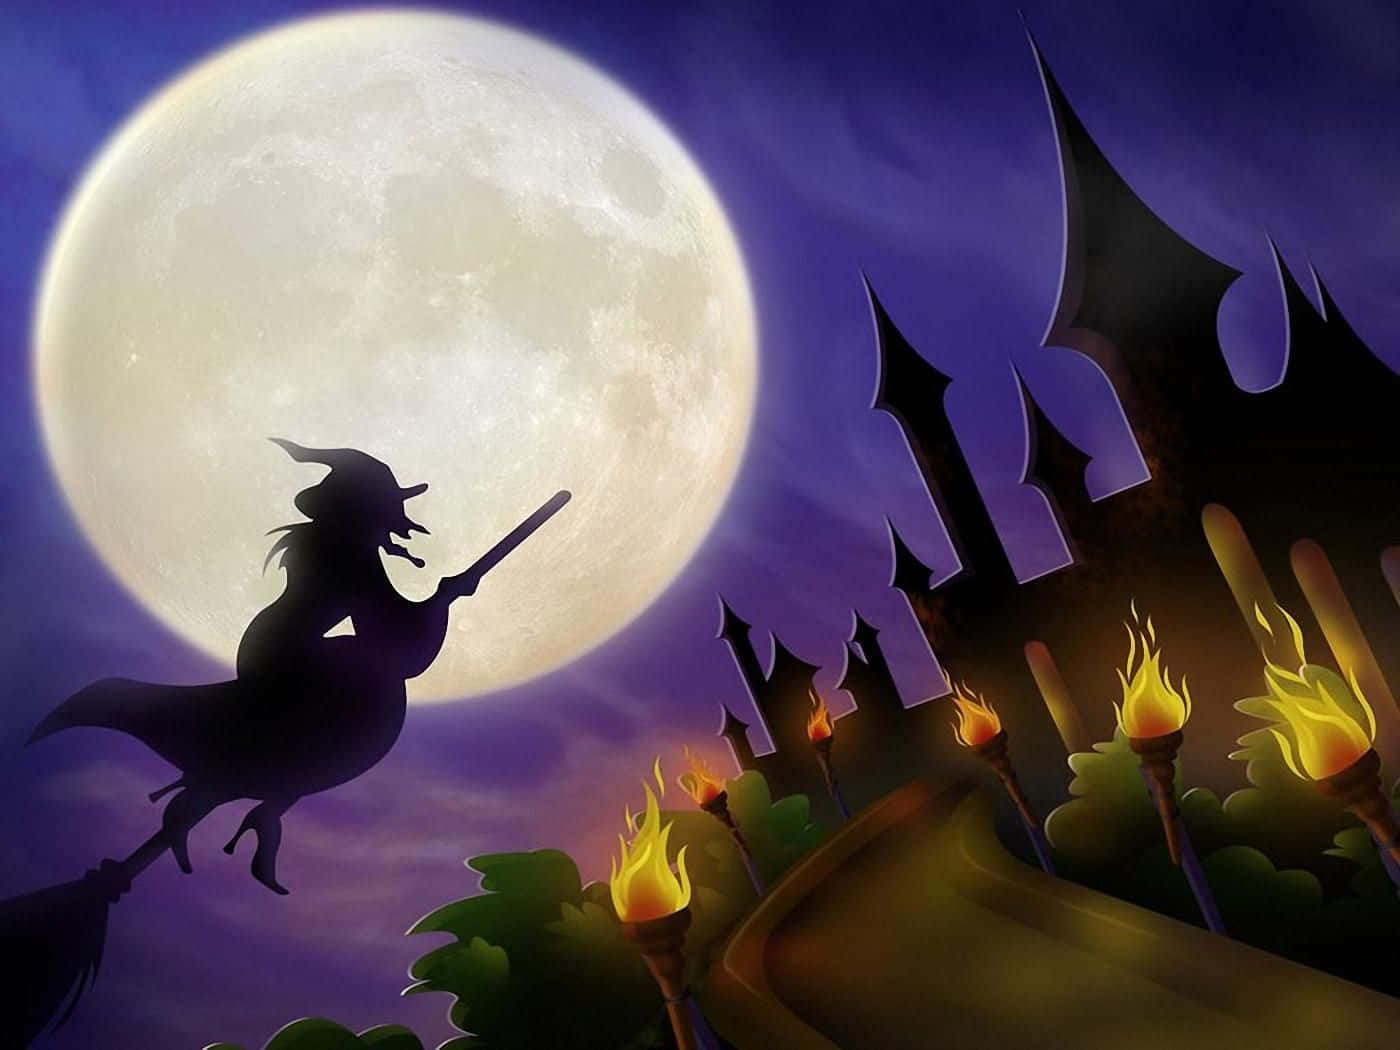 Unabruja De Estética Oscura Antes Del Halloween Lejos De Ser Aterrador. Fondo de pantalla